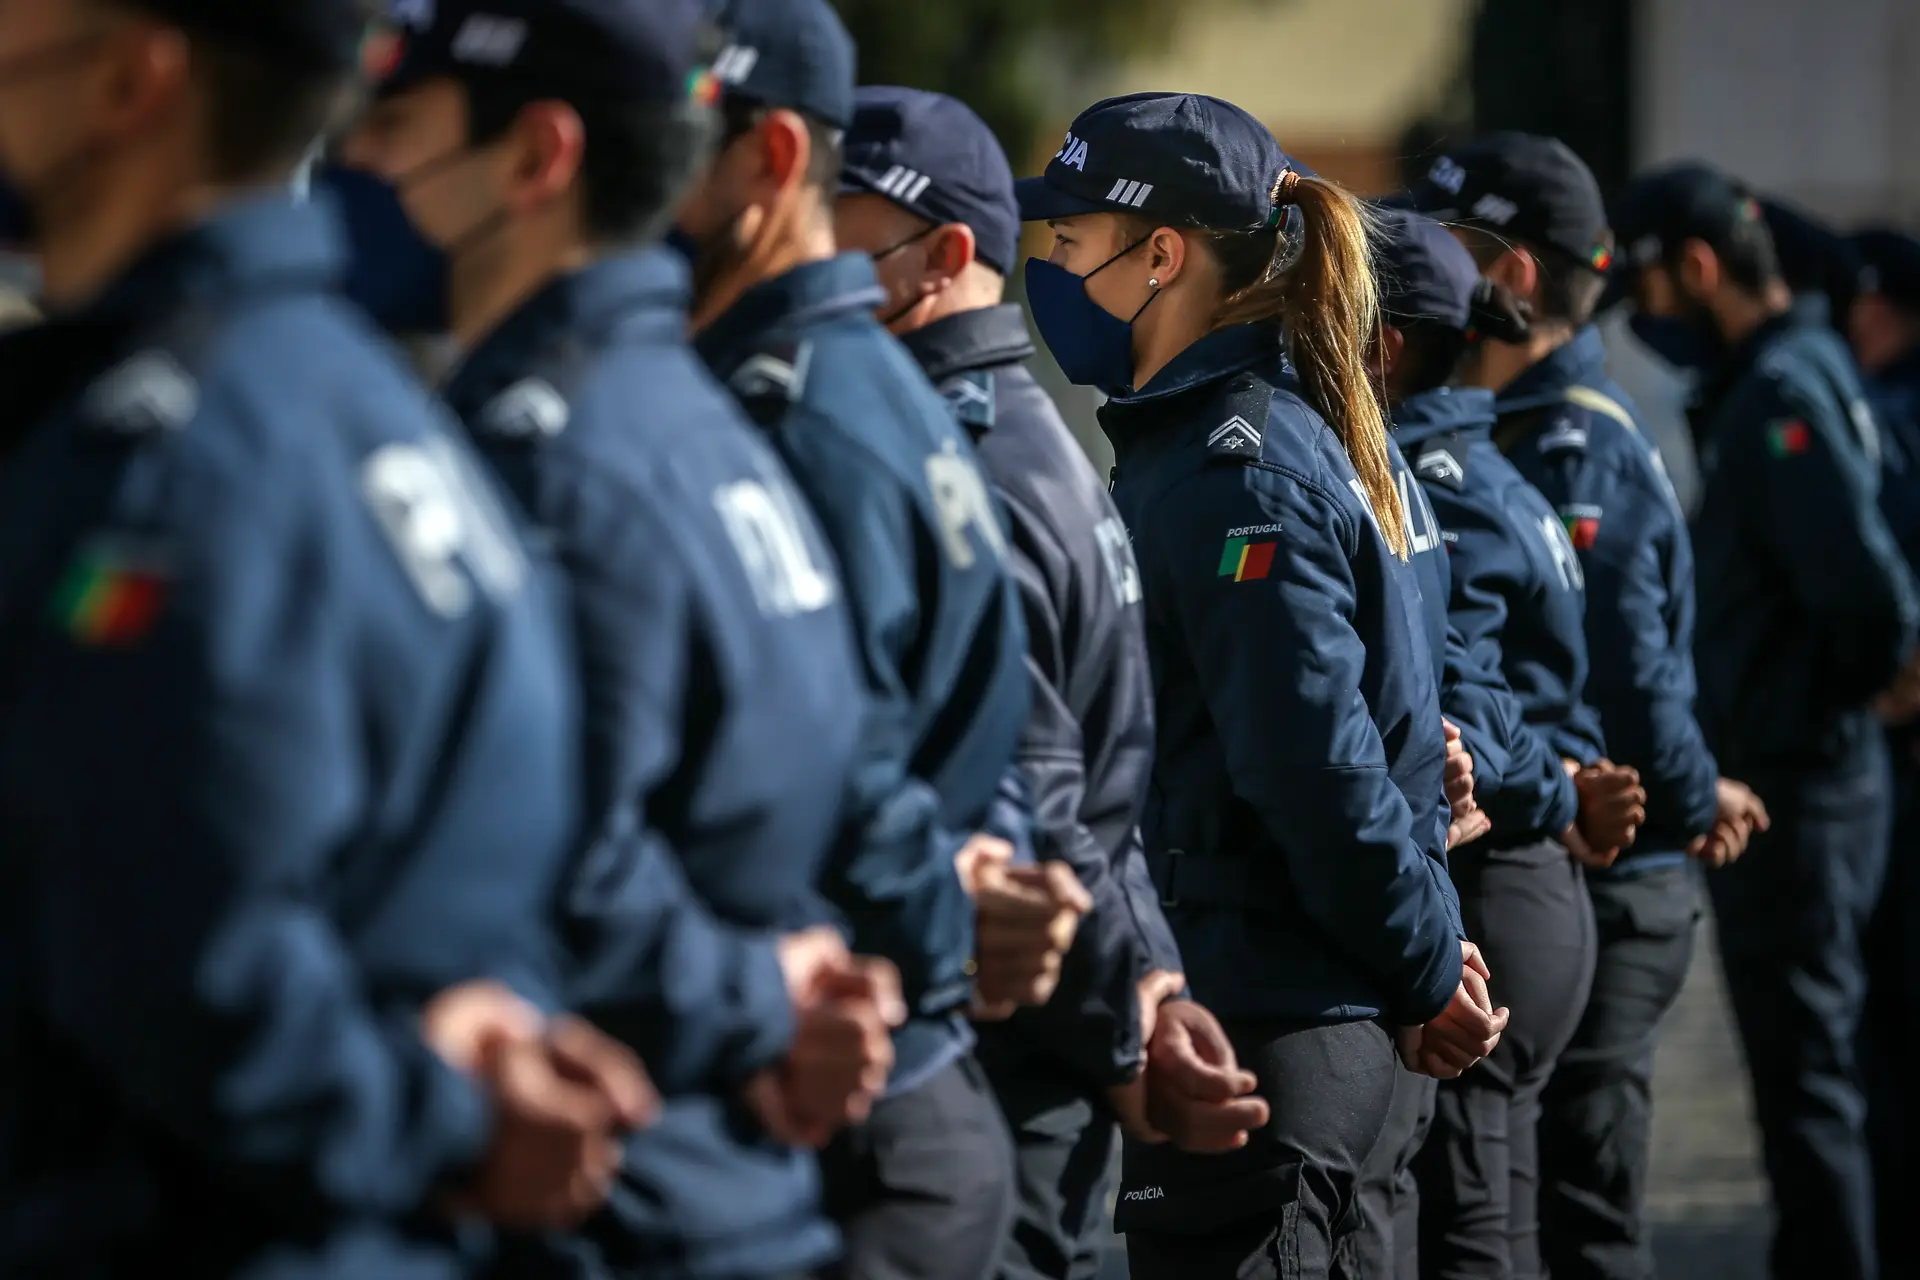 Cerimónia comemorativa do 154.º aniversário do Comando Metropolitano de Lisboa da Polícia de Segurança Pública, no Palácio da Ajuda, em Lisboa.